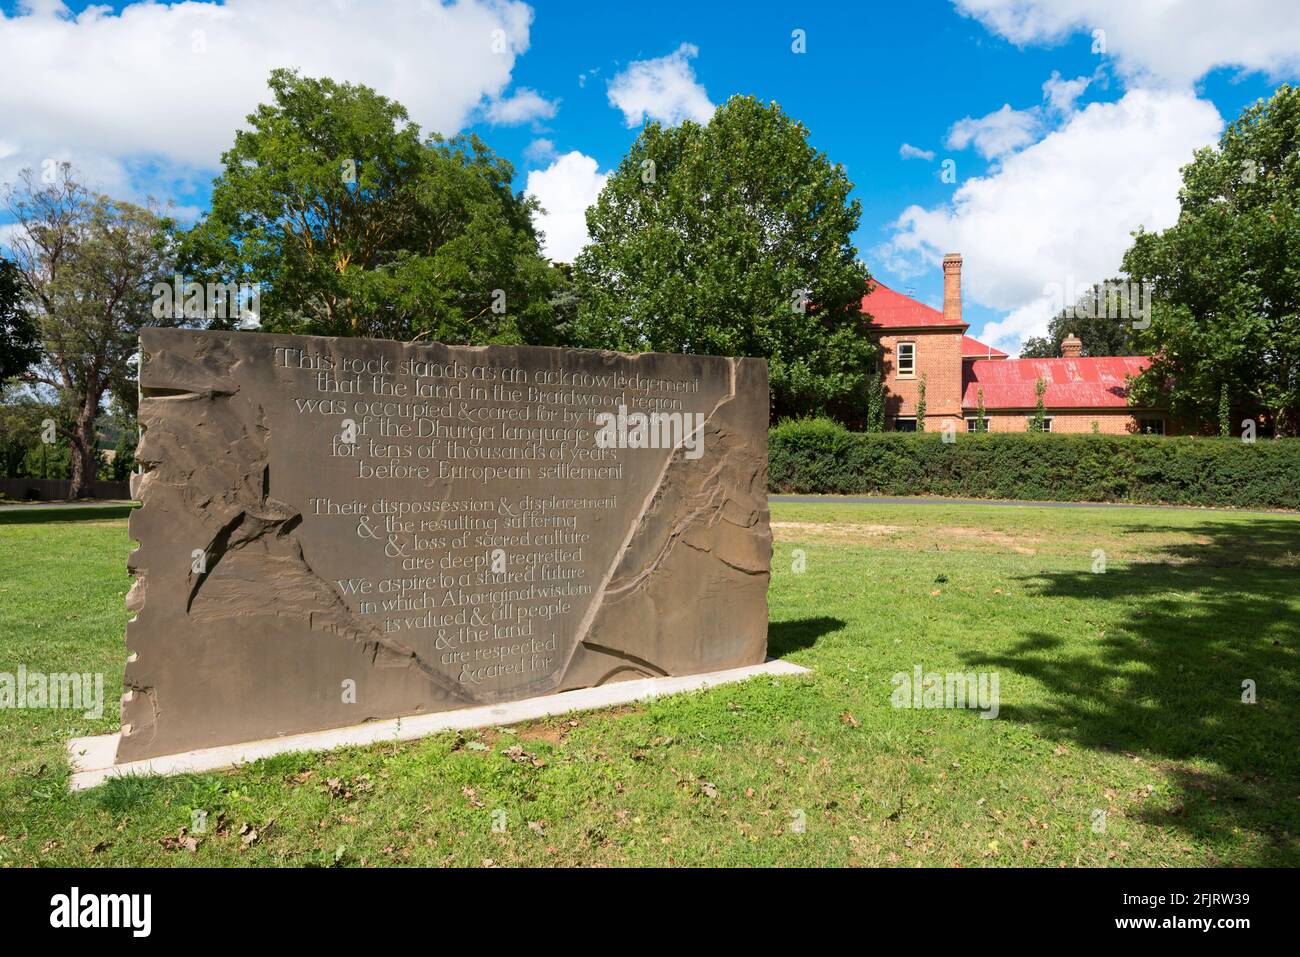 La roccia di Dhurga a Braidwood, nuovo Galles del Sud, Australia, è un riconoscimento della dismissione e delle ingiustizie passate nei confronti delle popolazioni indigene locali Foto Stock